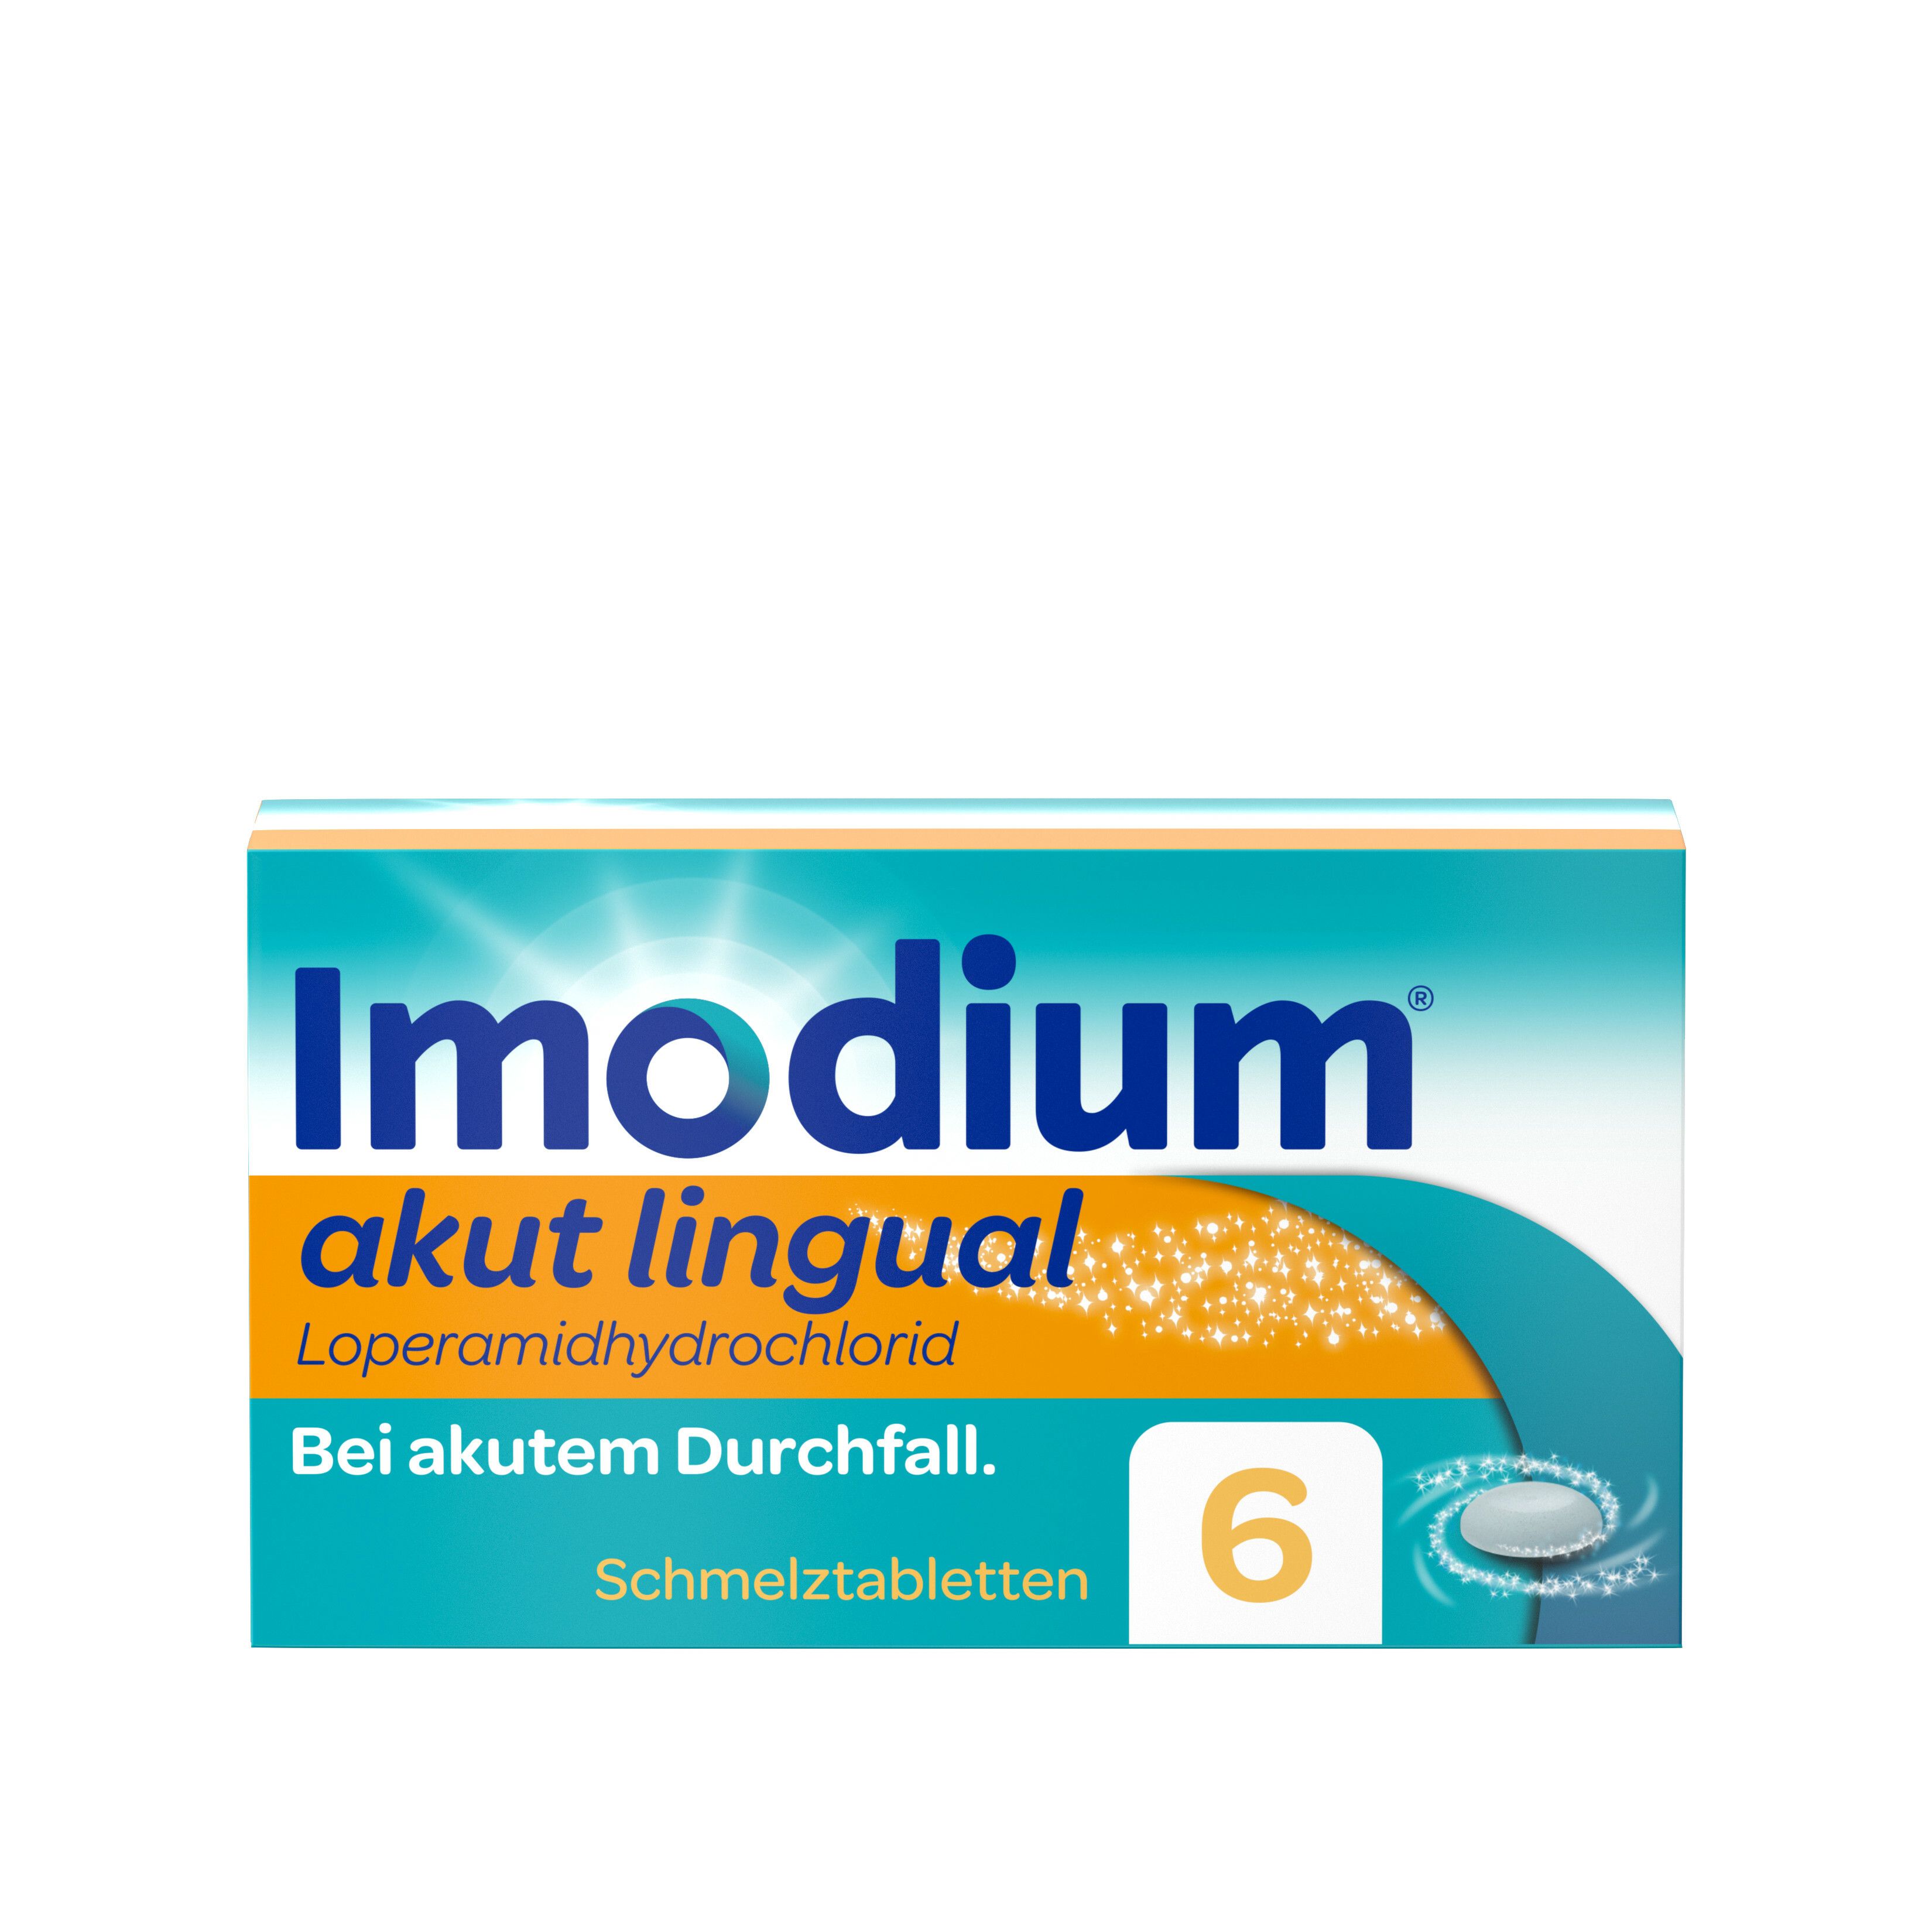 Imodium® akut lingual Schmelztabletten - bei akutem Durchfall